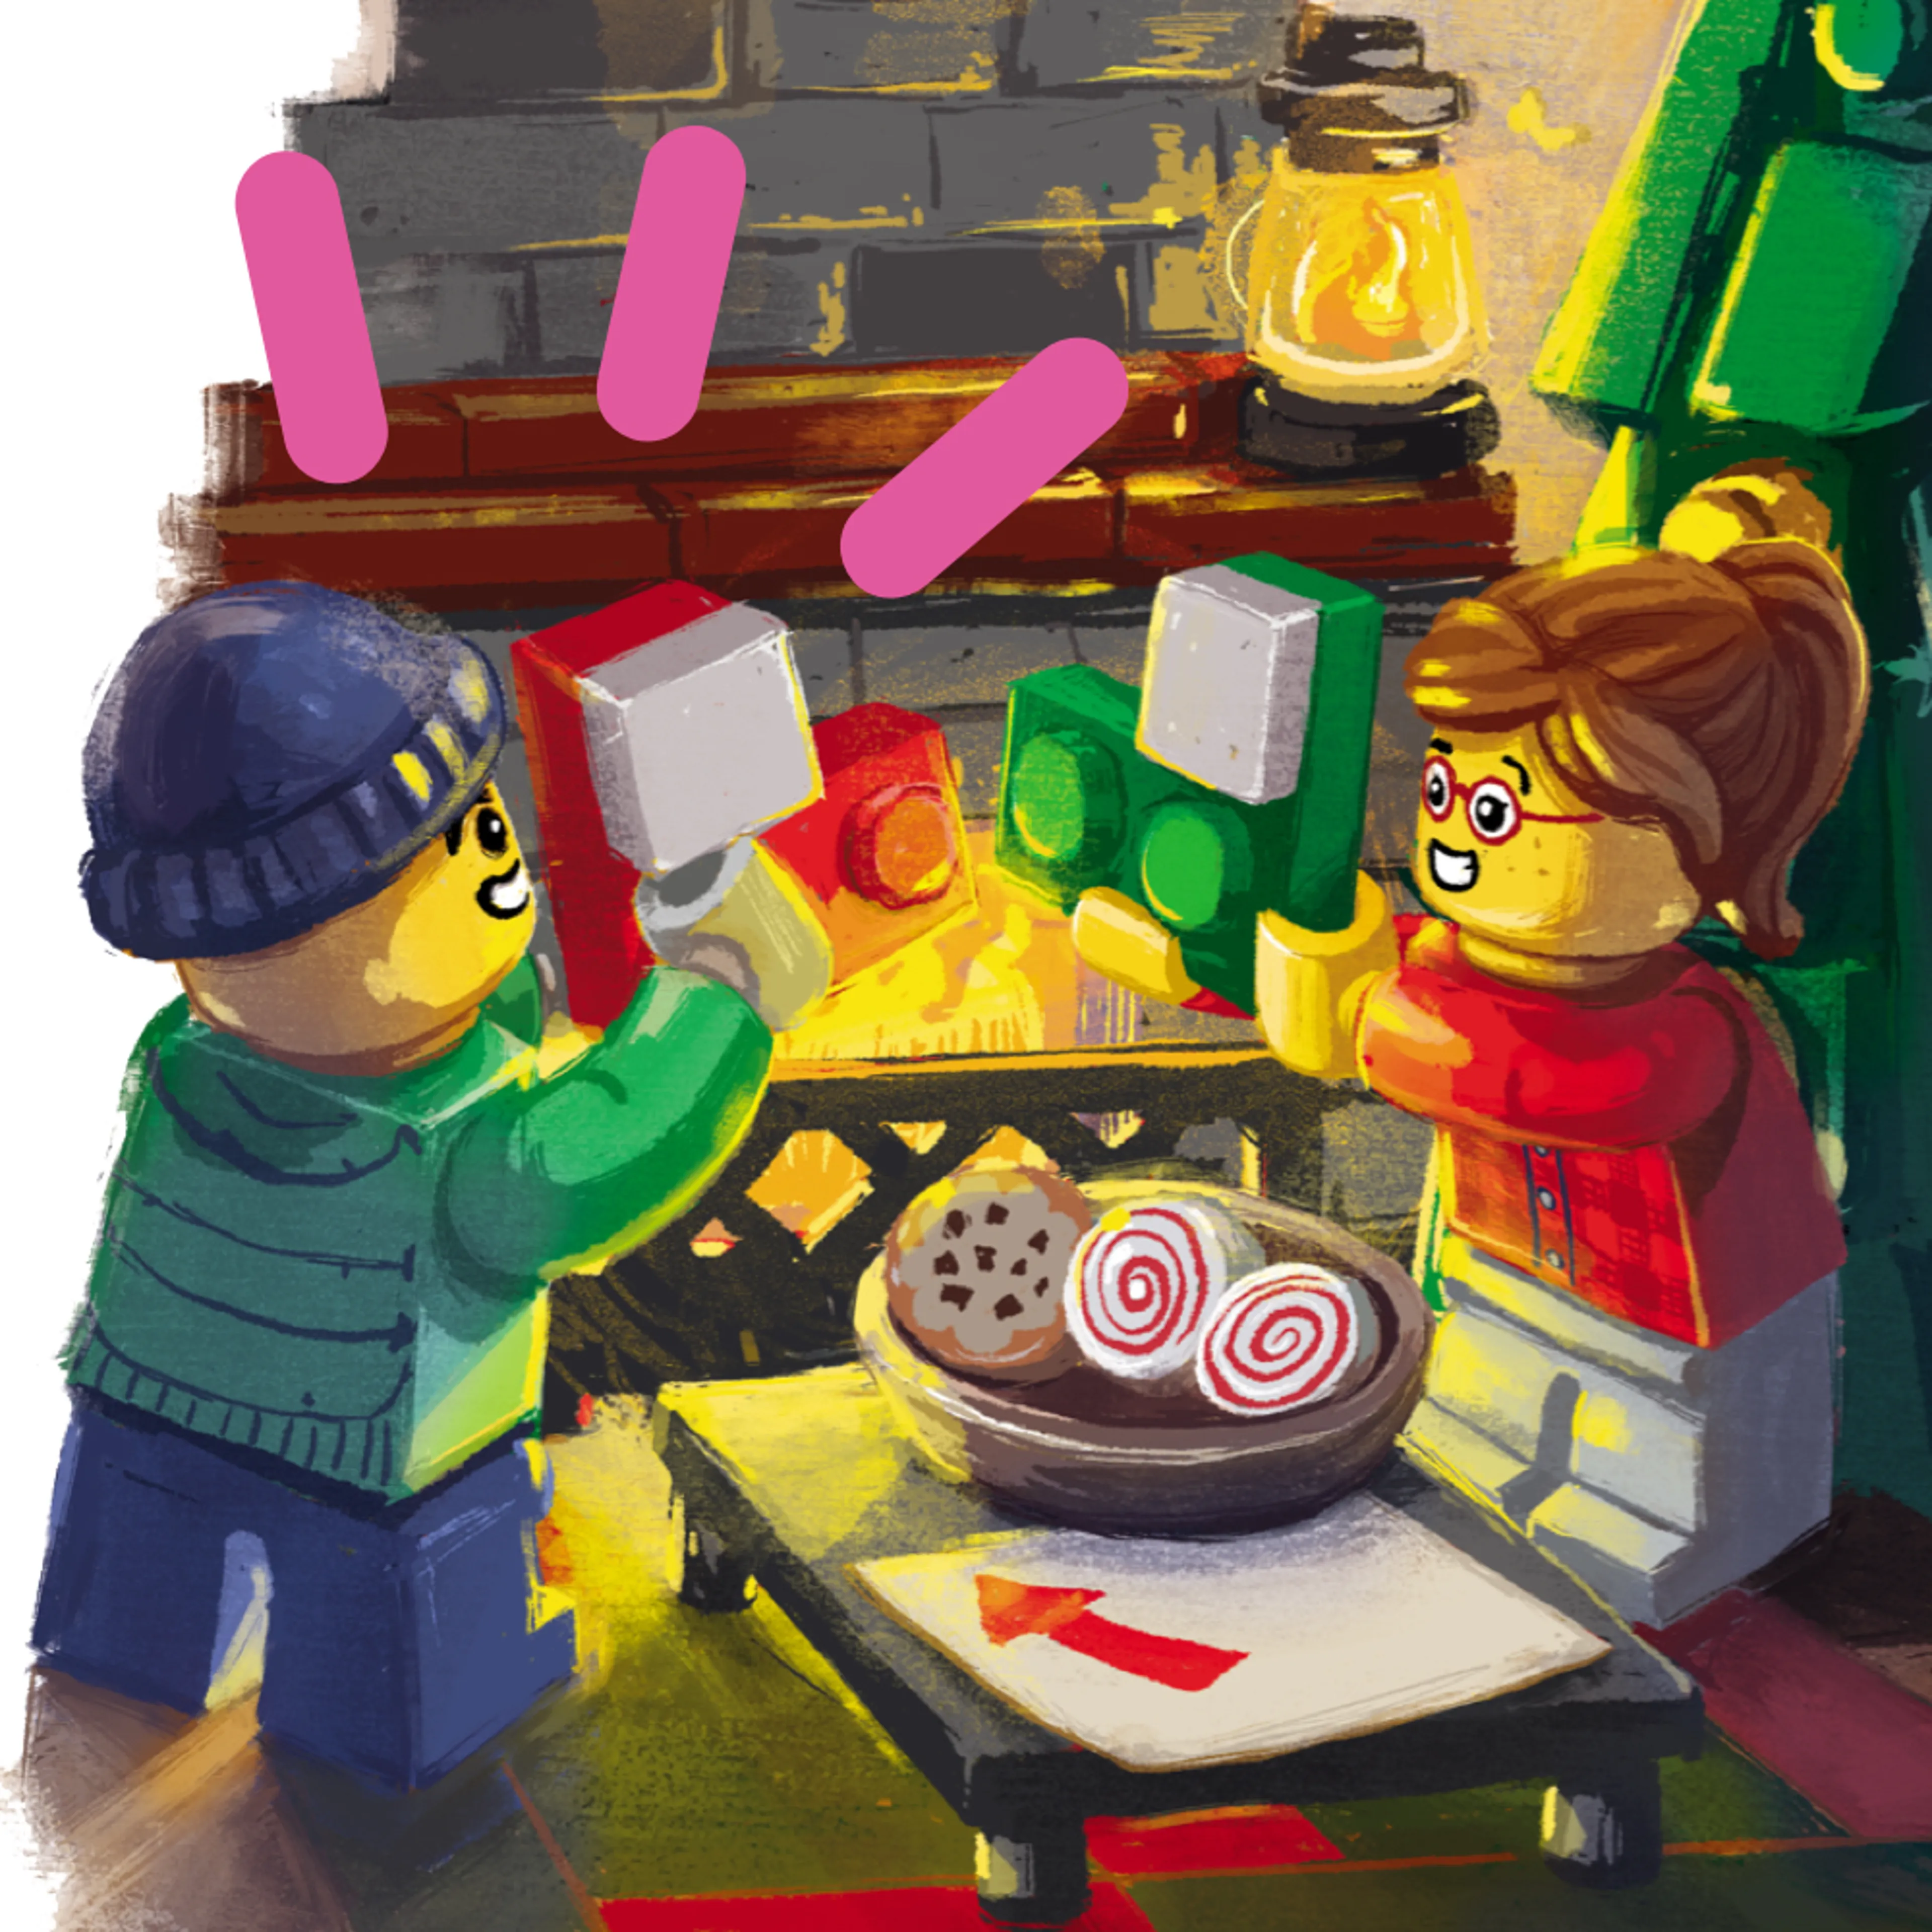 Entrez dans l'esprit festif avec le catalogue LEGO Noël 2020